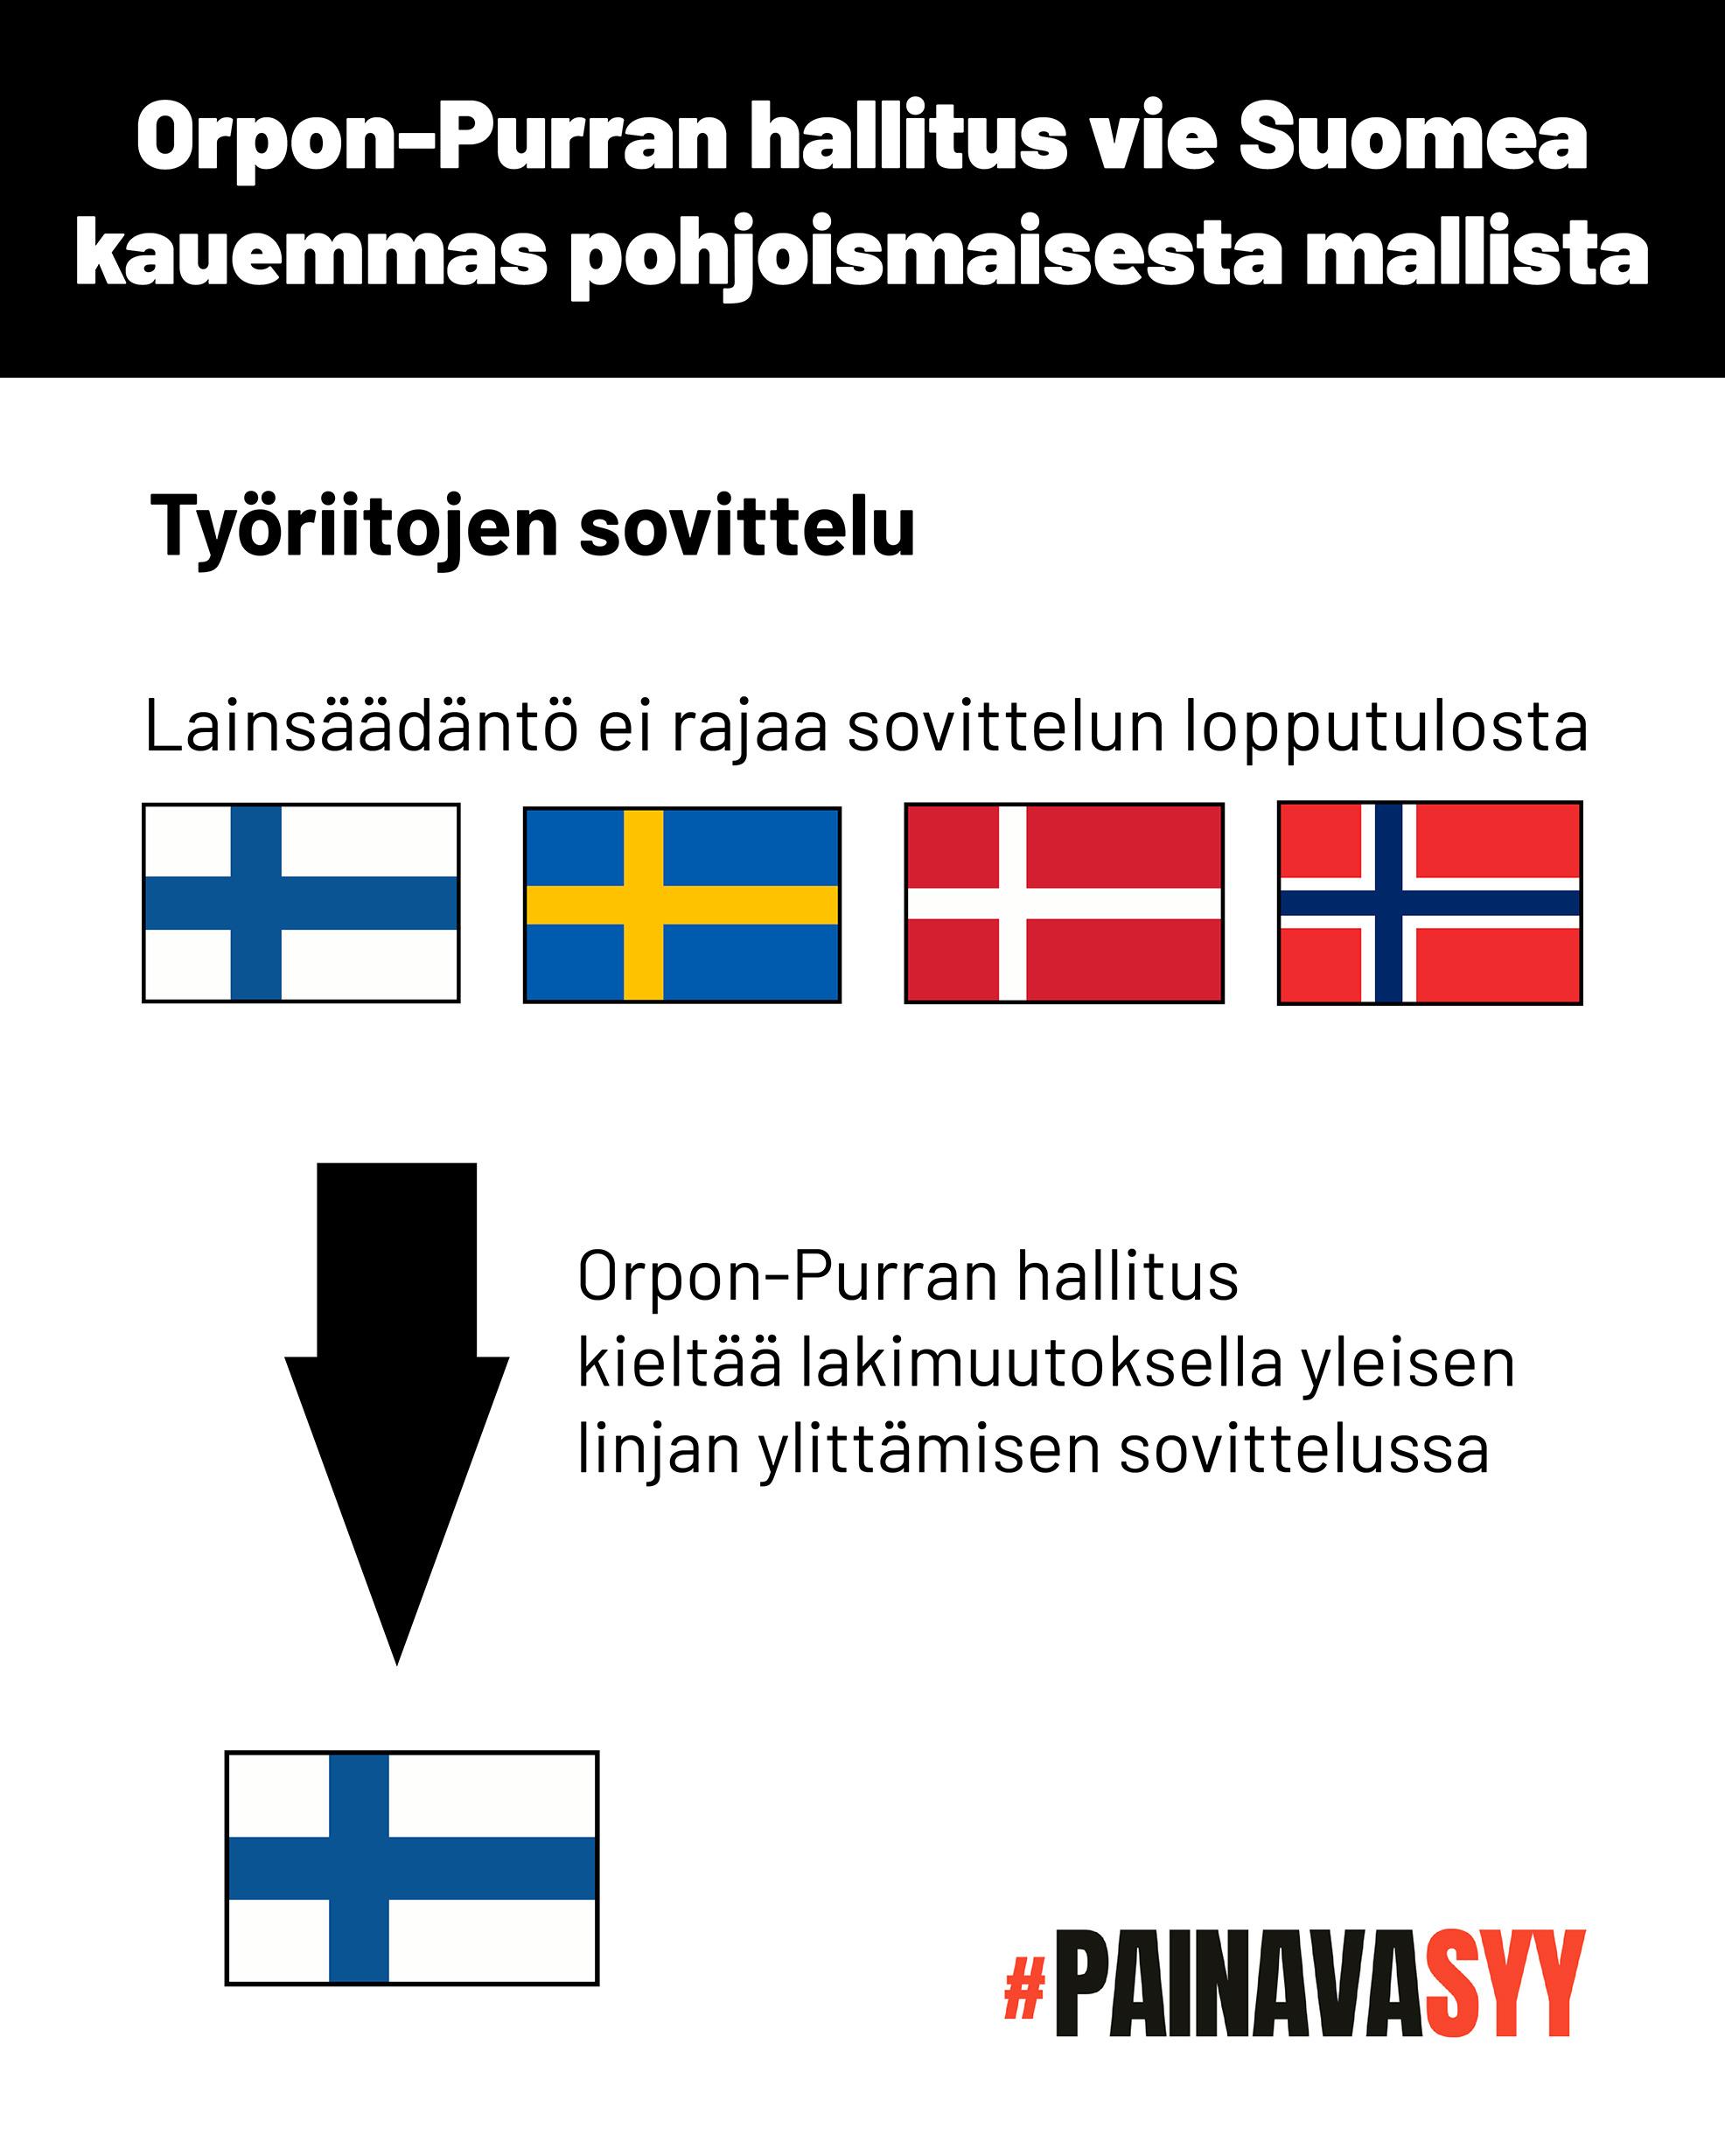 Kaavio osoittaa, että nyt Suomen, Ruotsin, Tanskan tai Norjan lainsäädäntö ei rajaa työriitojen sovittelun lopputulosta. Orpon-Purran hallitus kieltää lakimuutoksella yleisen linjan ylittämisen sovittelussa.